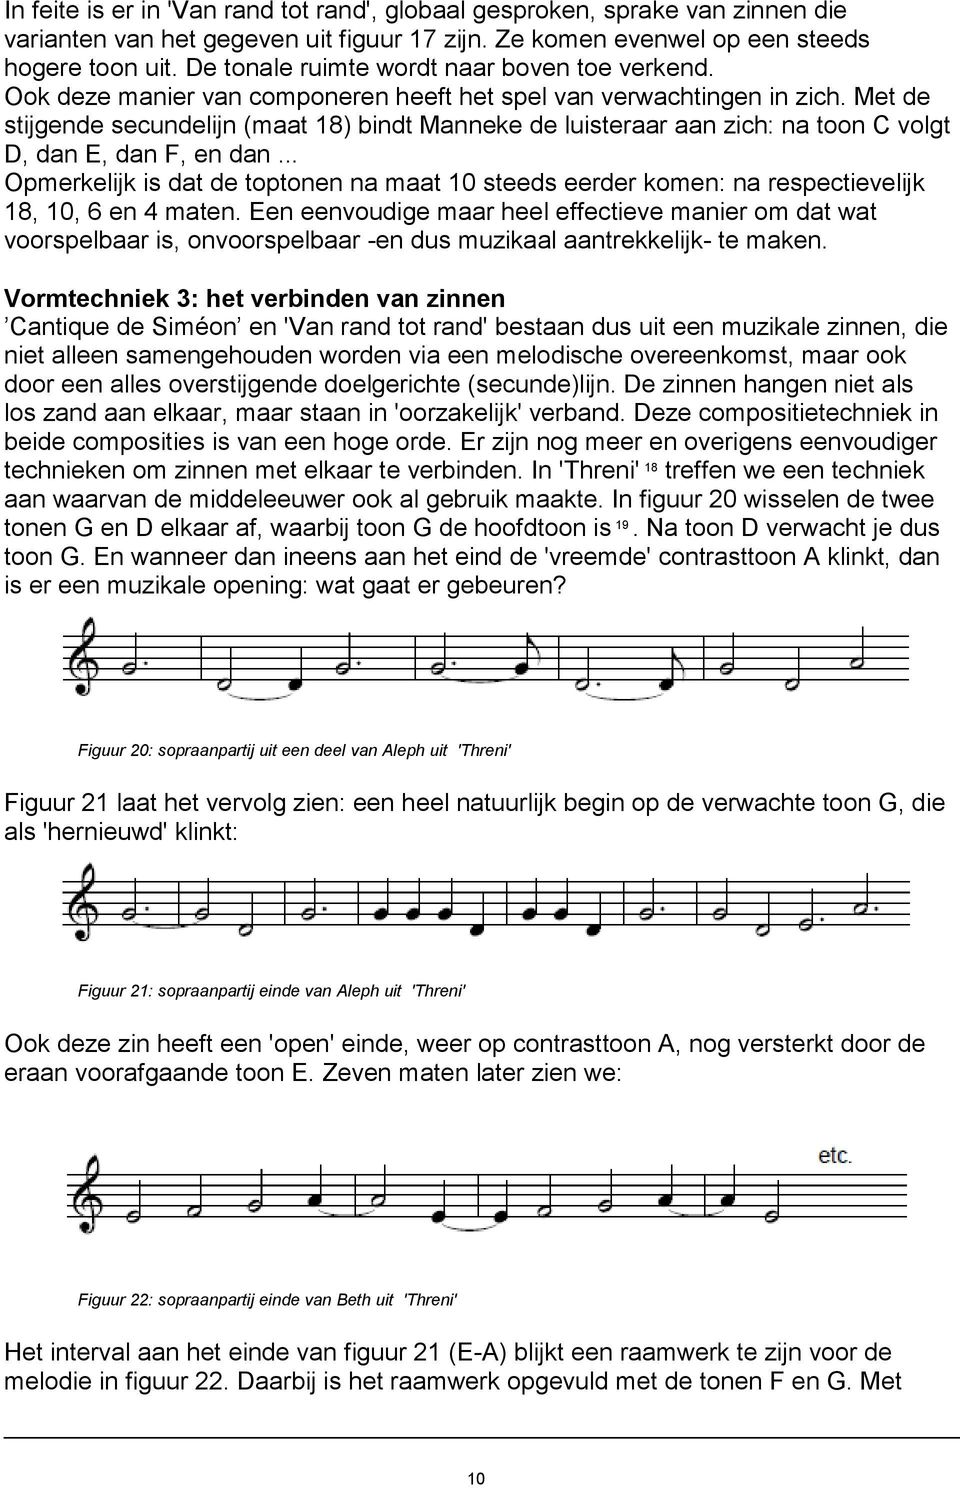 Met de stijgende secundelijn (maat 18) bindt Manneke de luisteraar aan zich: na toon C volgt D, dan E, dan F, en dan.